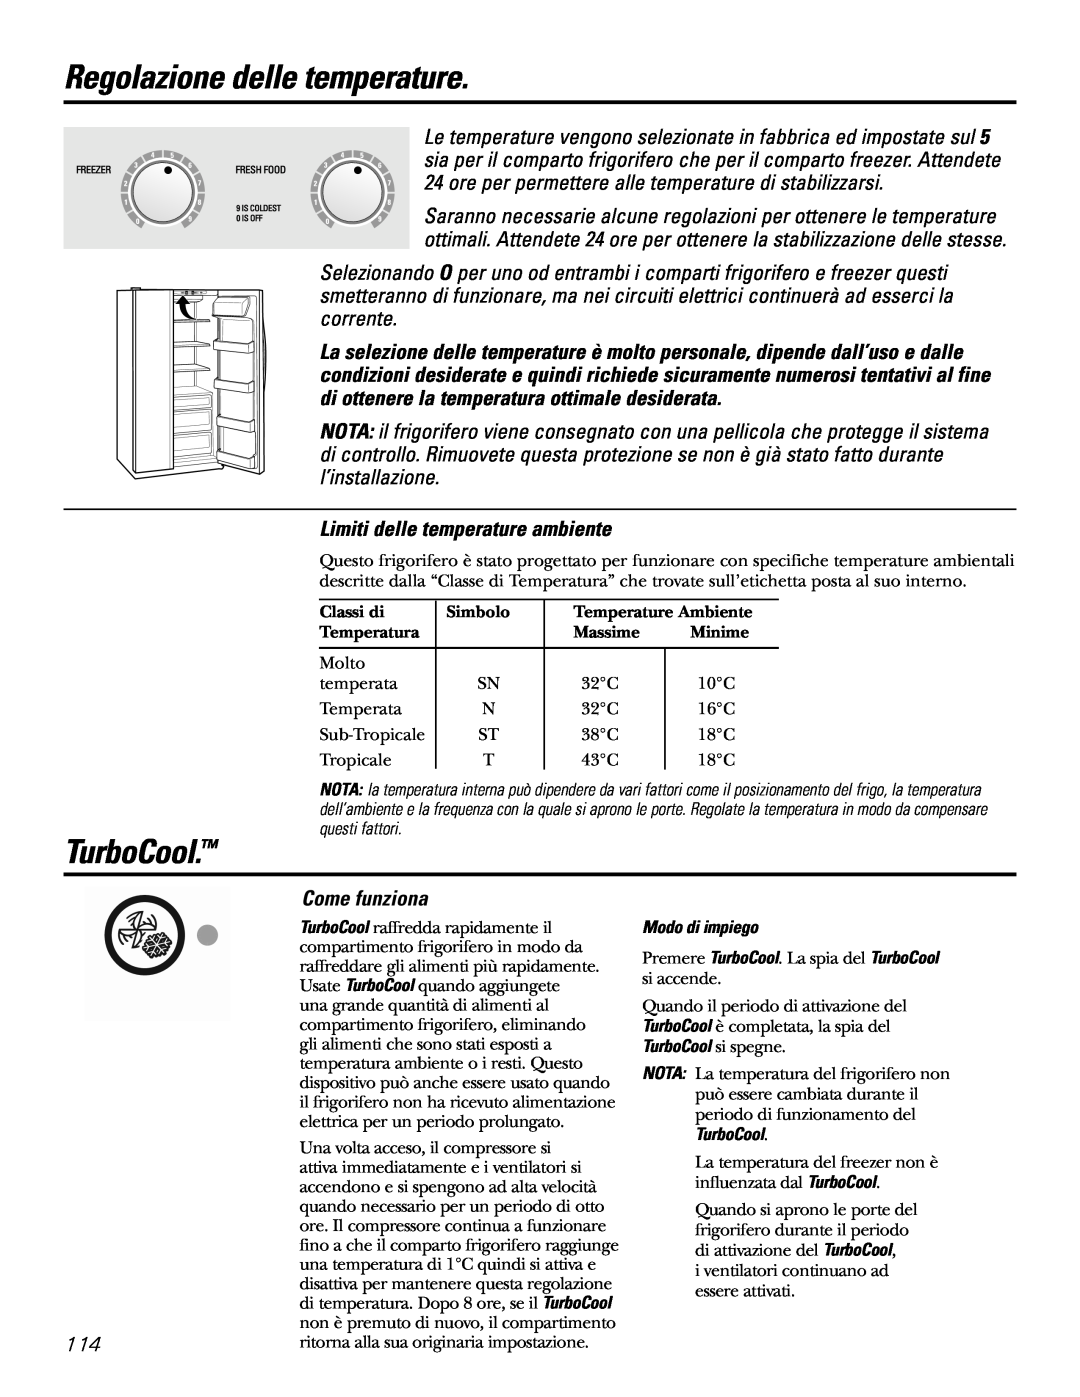 GE 200D2600P031 Regolazione delle temperature, Come funziona, TurboCool, Limiti delle temperature ambiente 